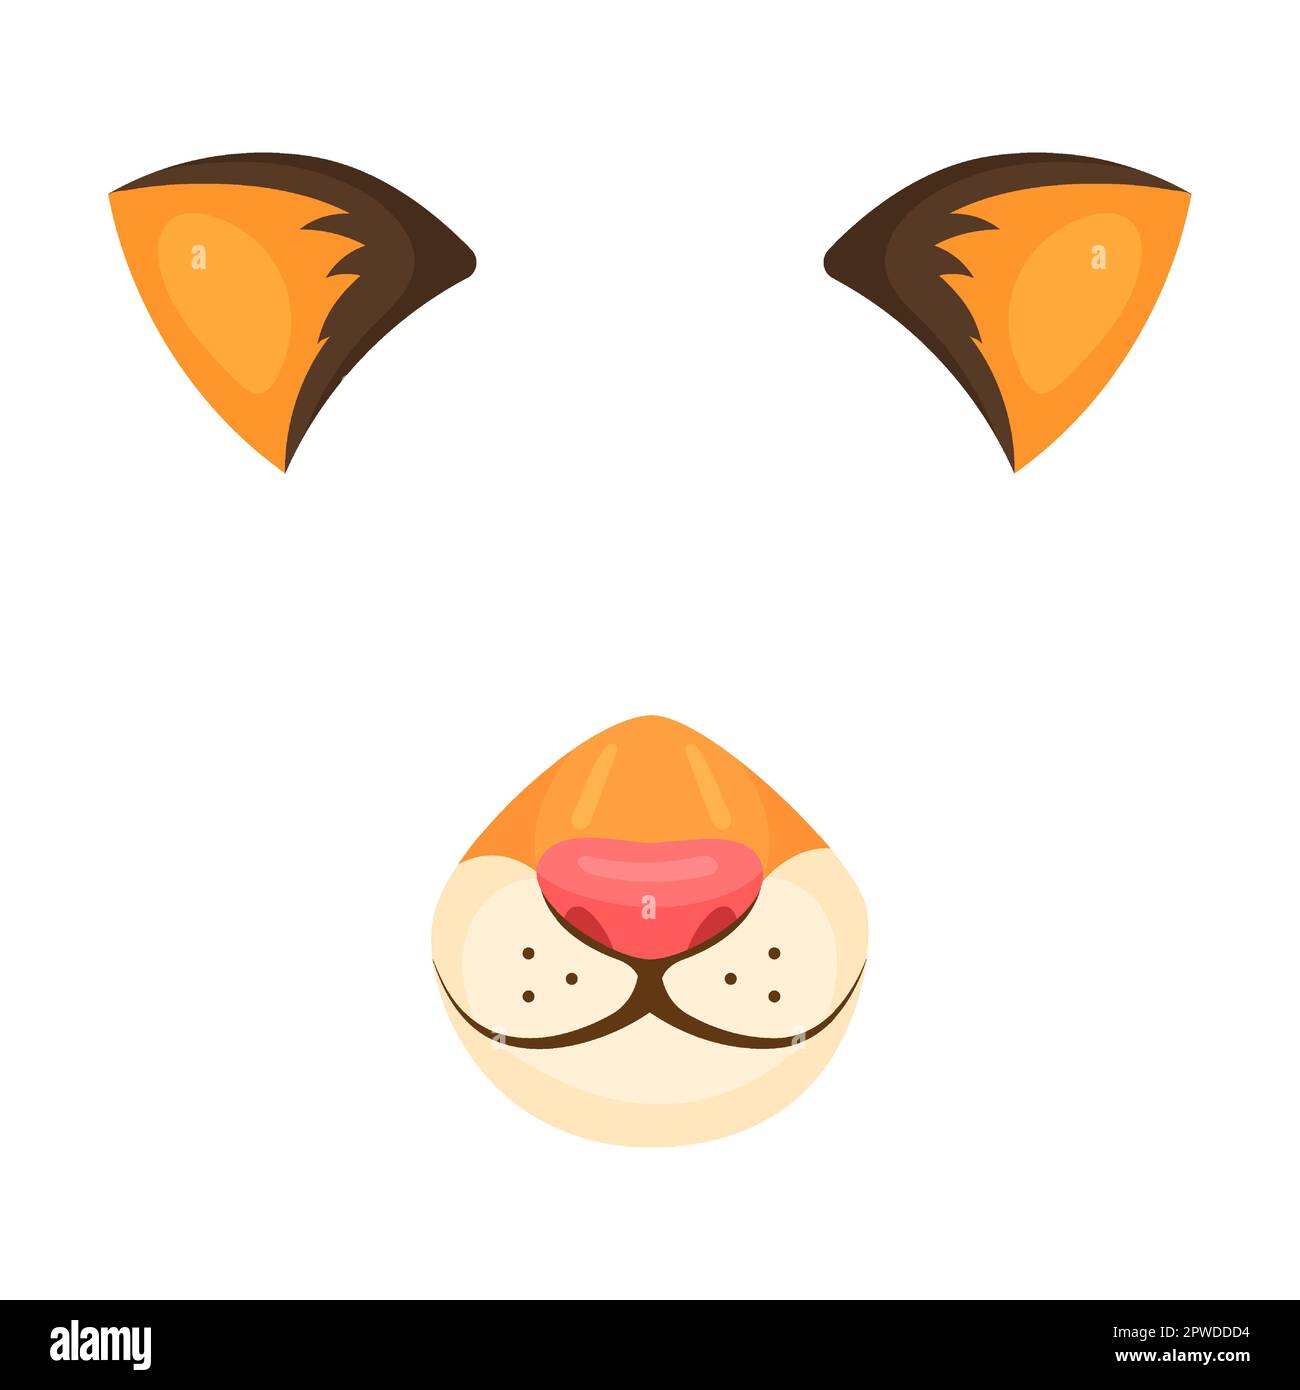 Masque de visage d'animal de tigre gai orange pour la vidéo et la photo. Illustration vectorielle de filtres selfie avec oreilles et nez. Caricature drôle de museau isolé Illustration de Vecteur